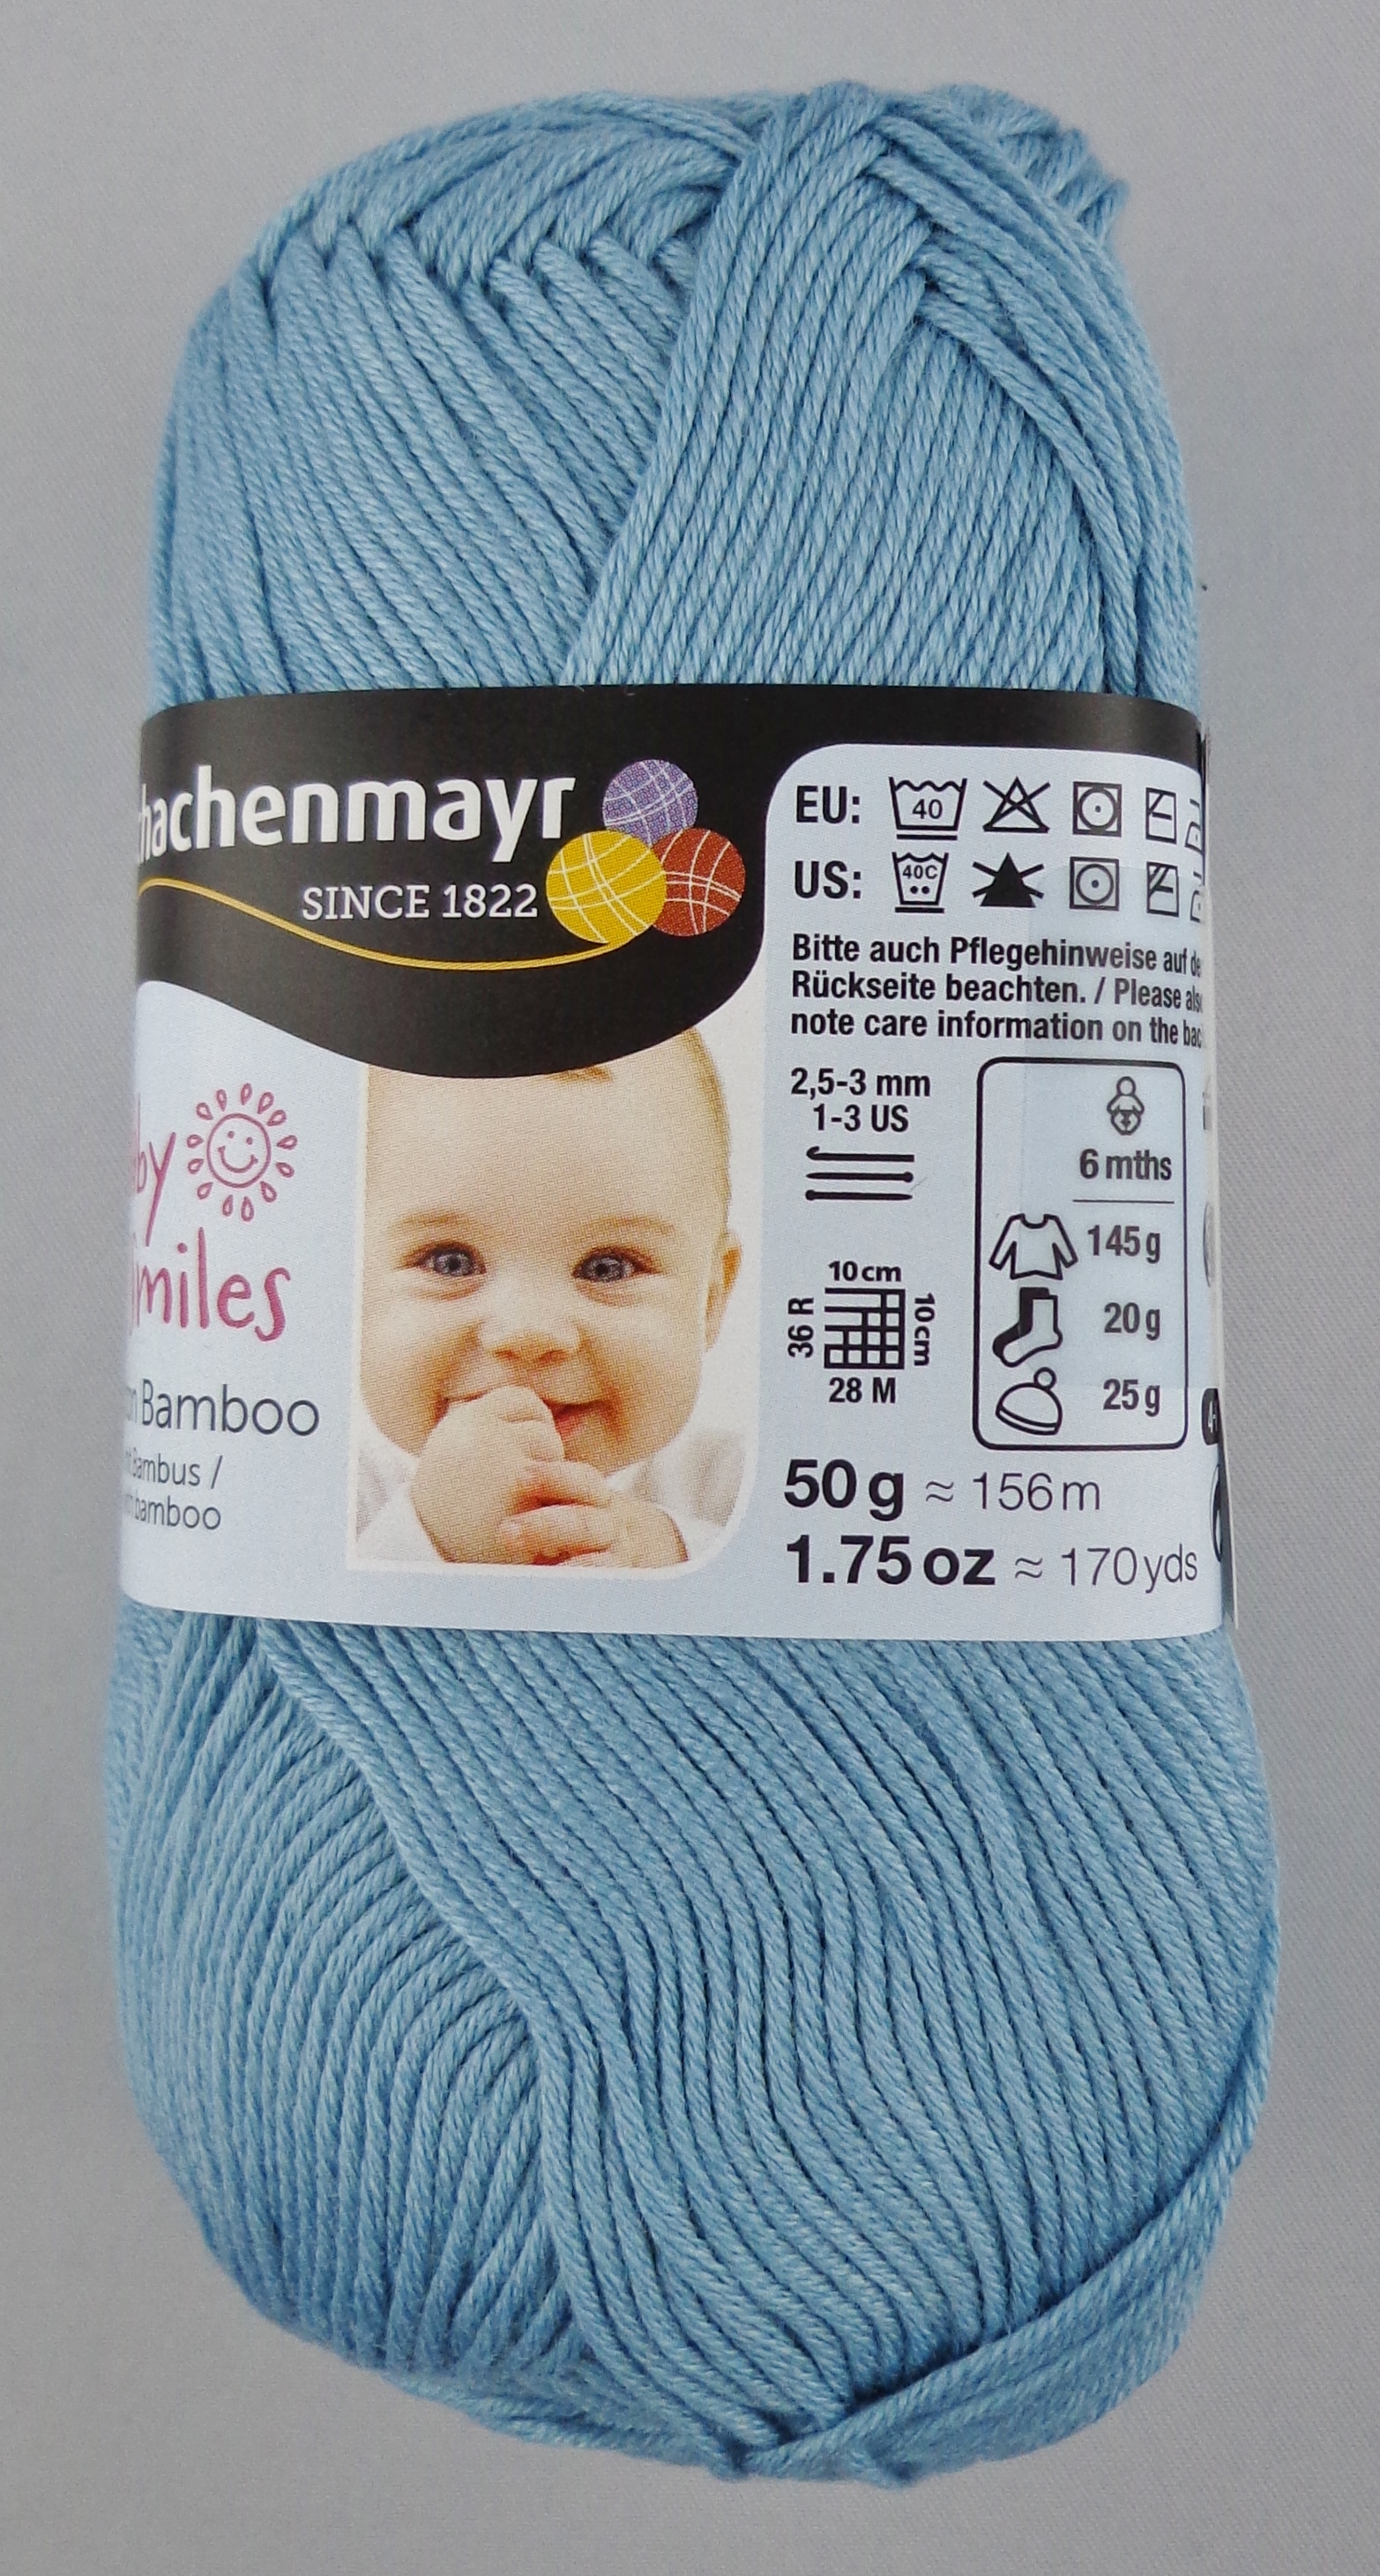 50G Opal Handstrickgarne Schachenmayr Baby Smiles Cotton Bamboo